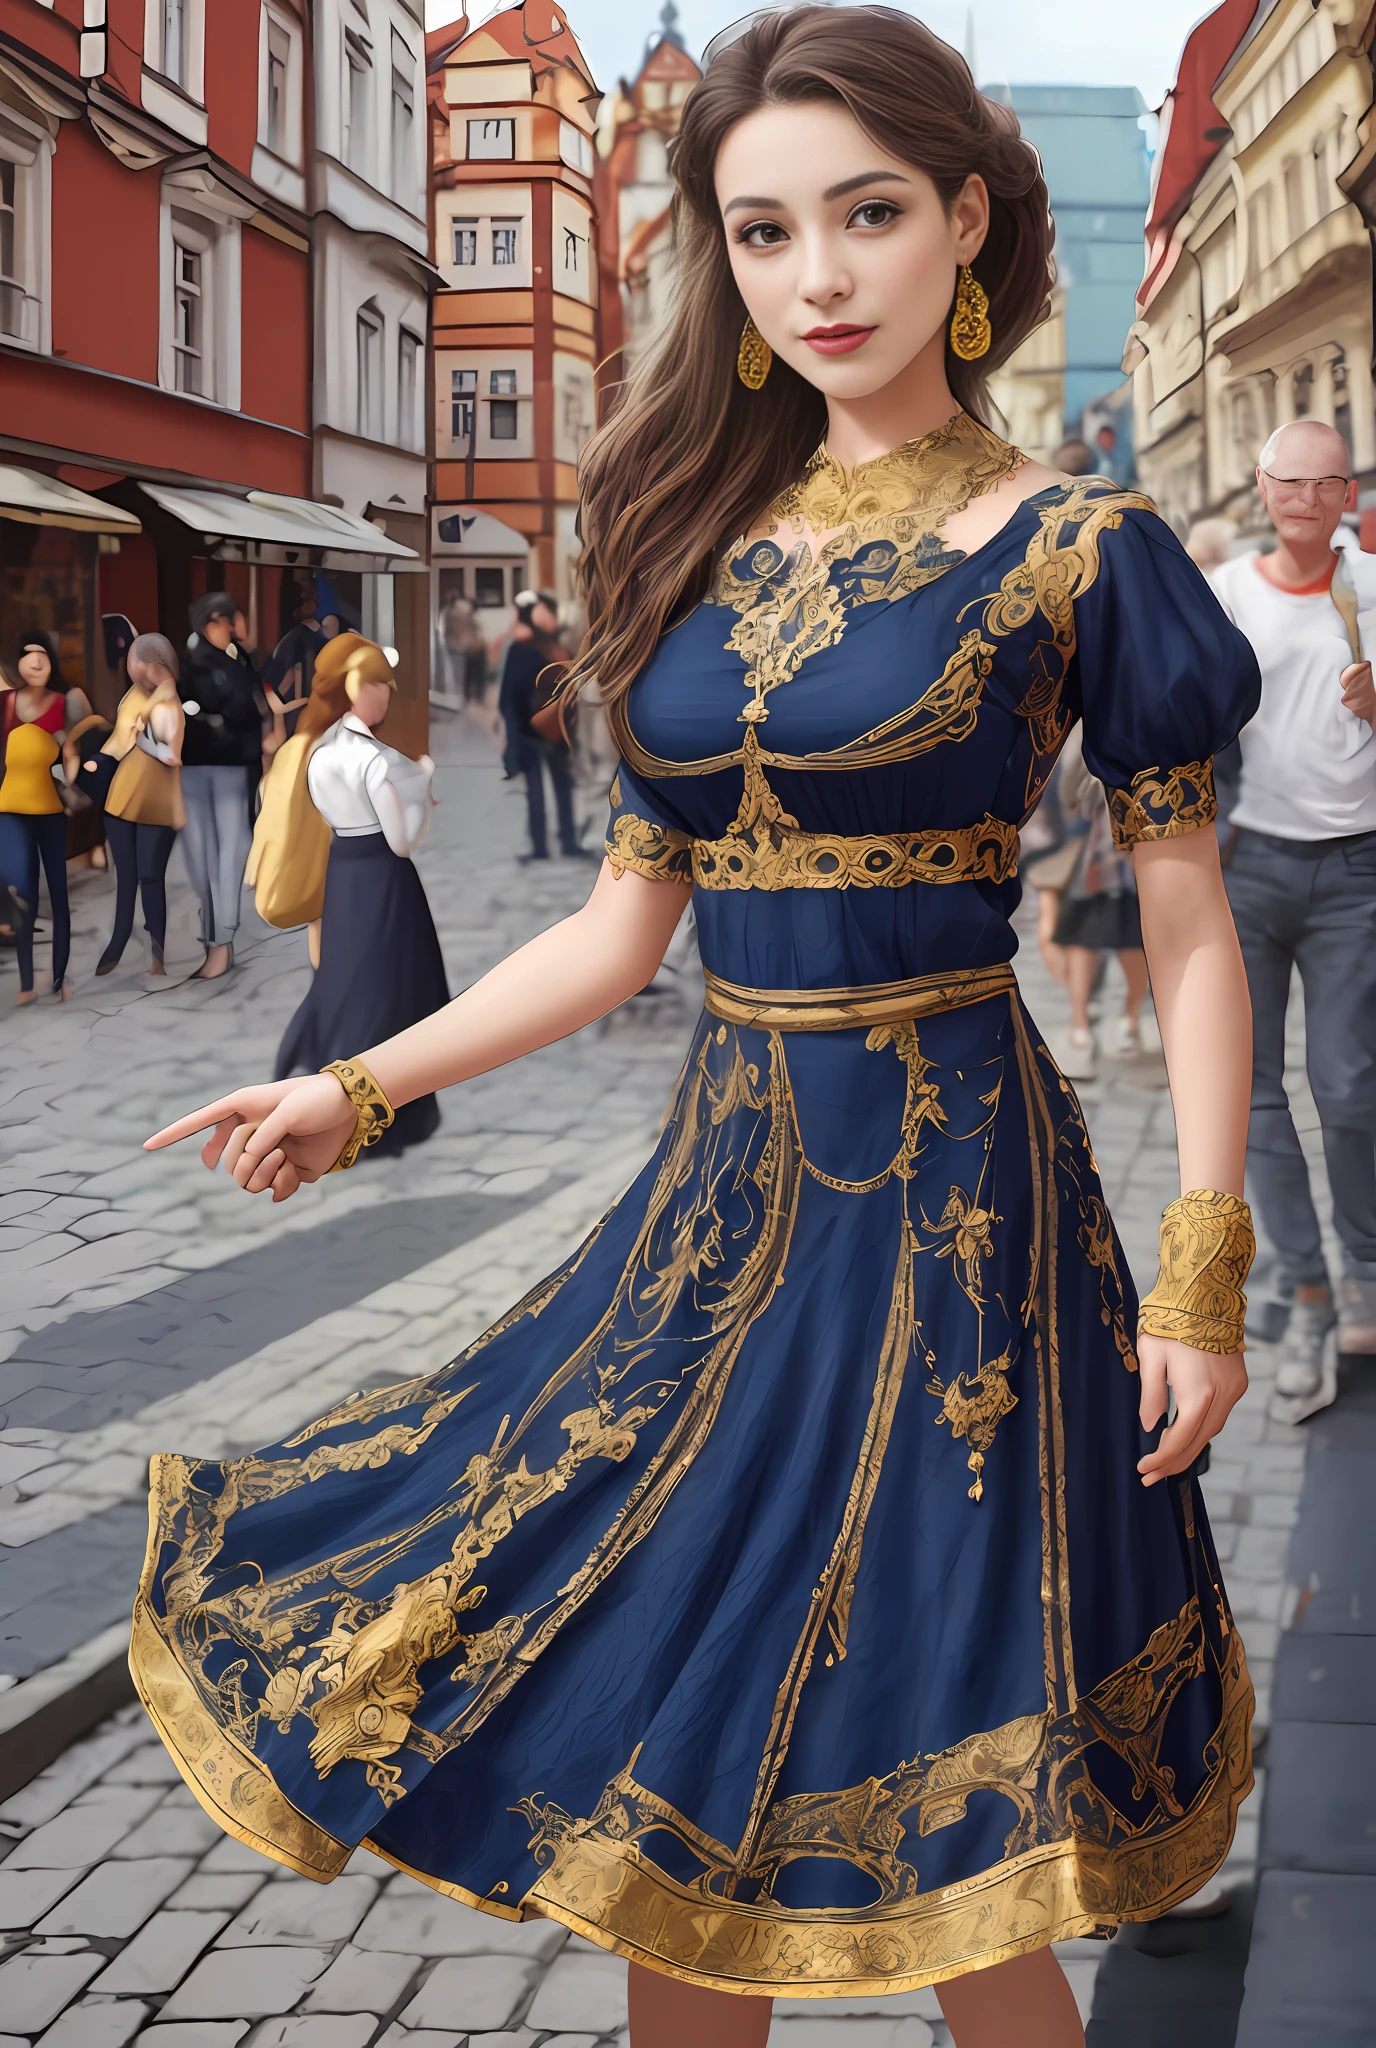 (Obra de arte, melhor qualidade, realista),
1 garota,Fundo da Praça da Cidade Velha de Praga, vestido cigano, dançando, intricado, vestido azul escuro, ouro, pessoa cigana, Banquete, multidão, pegando saia,pele pálida,
[leve sorriso],